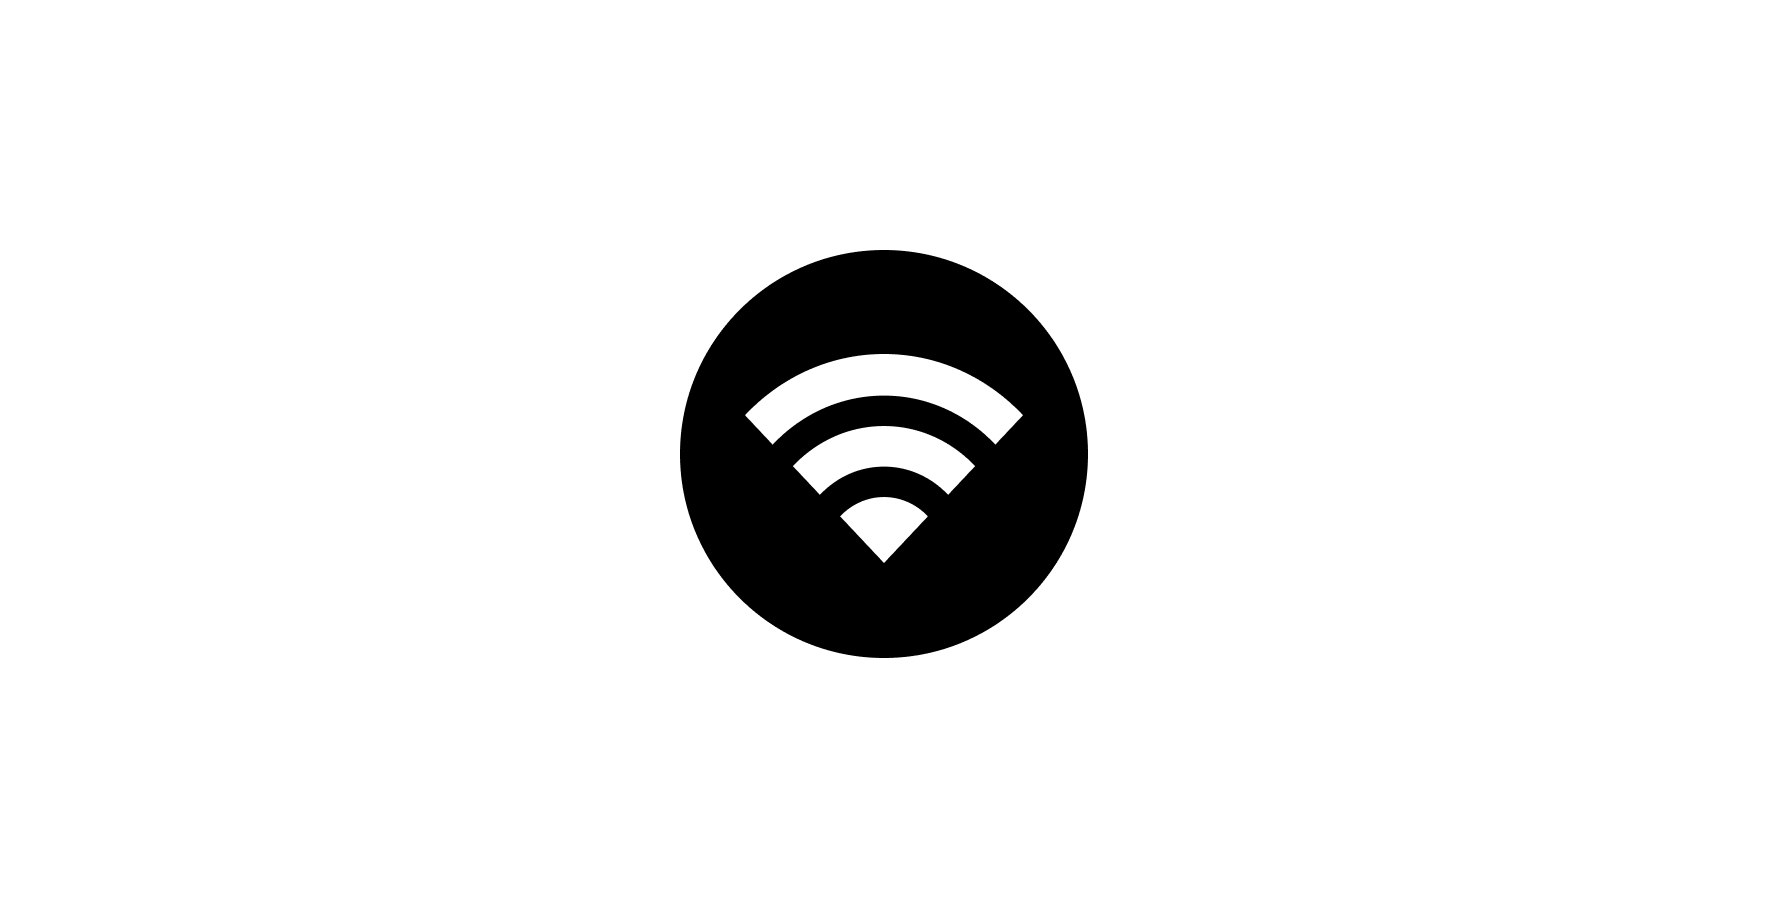 Graphic representing WiFi